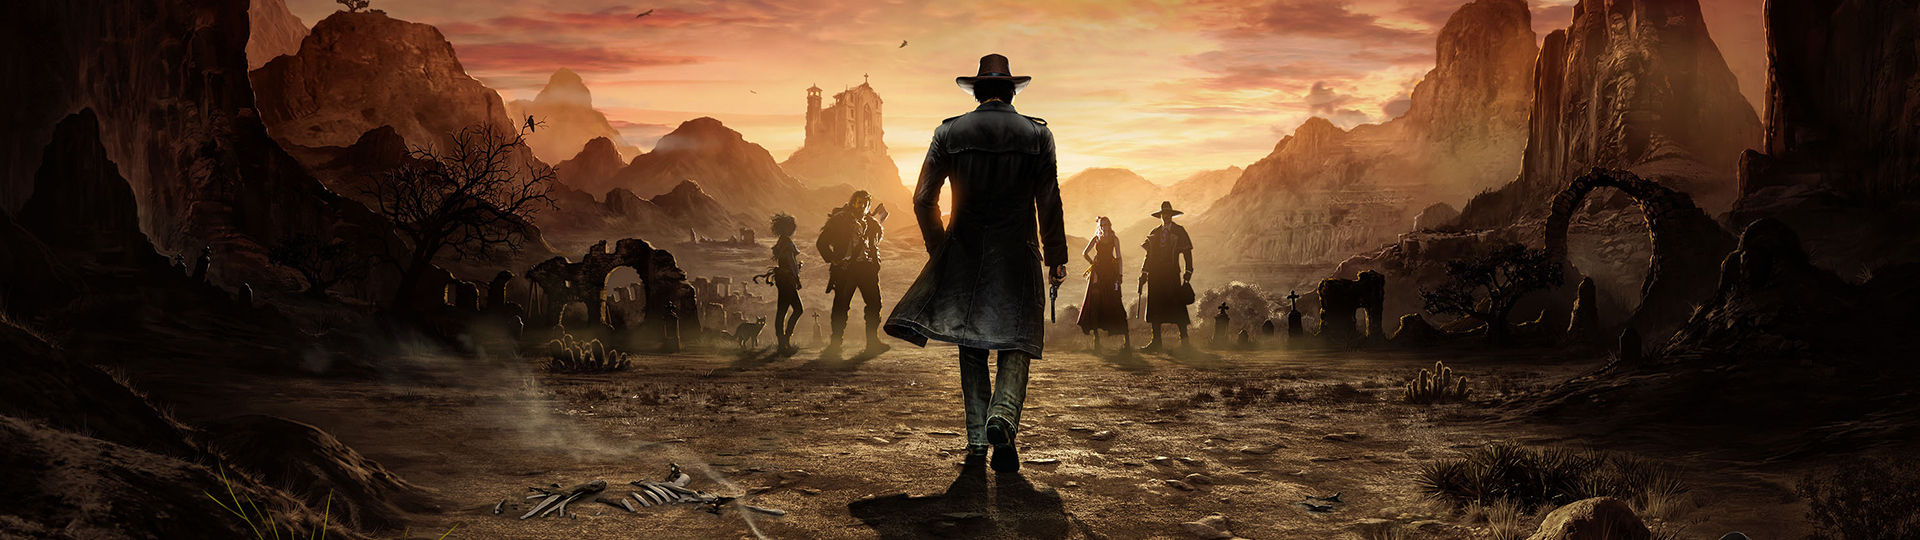 Desperados 3 – návrat westernové legendy | Recenze